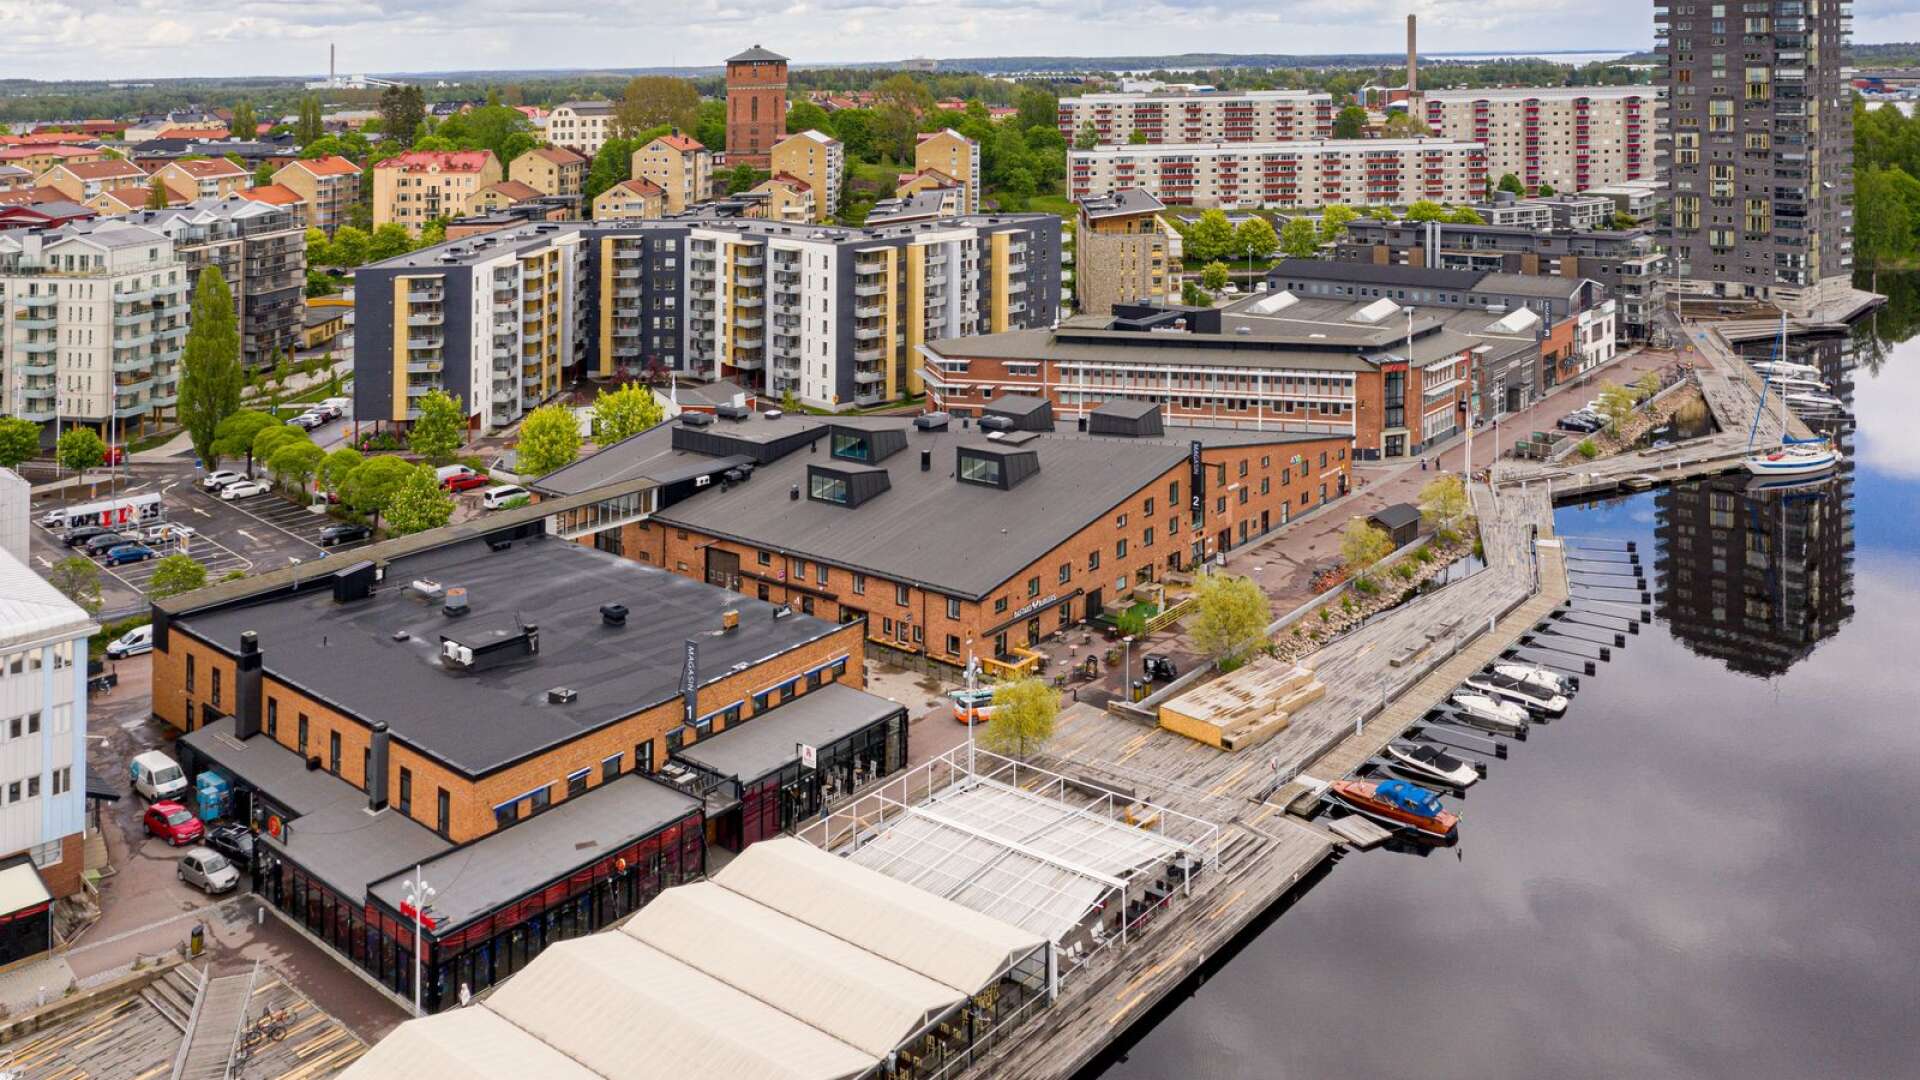 Bryggudden i Inre hamn är ett exempel på uppmärksammad arkitektur i Karlstad. Nu har Karlstad utsetts till Årets arkitekturkommun 2020.